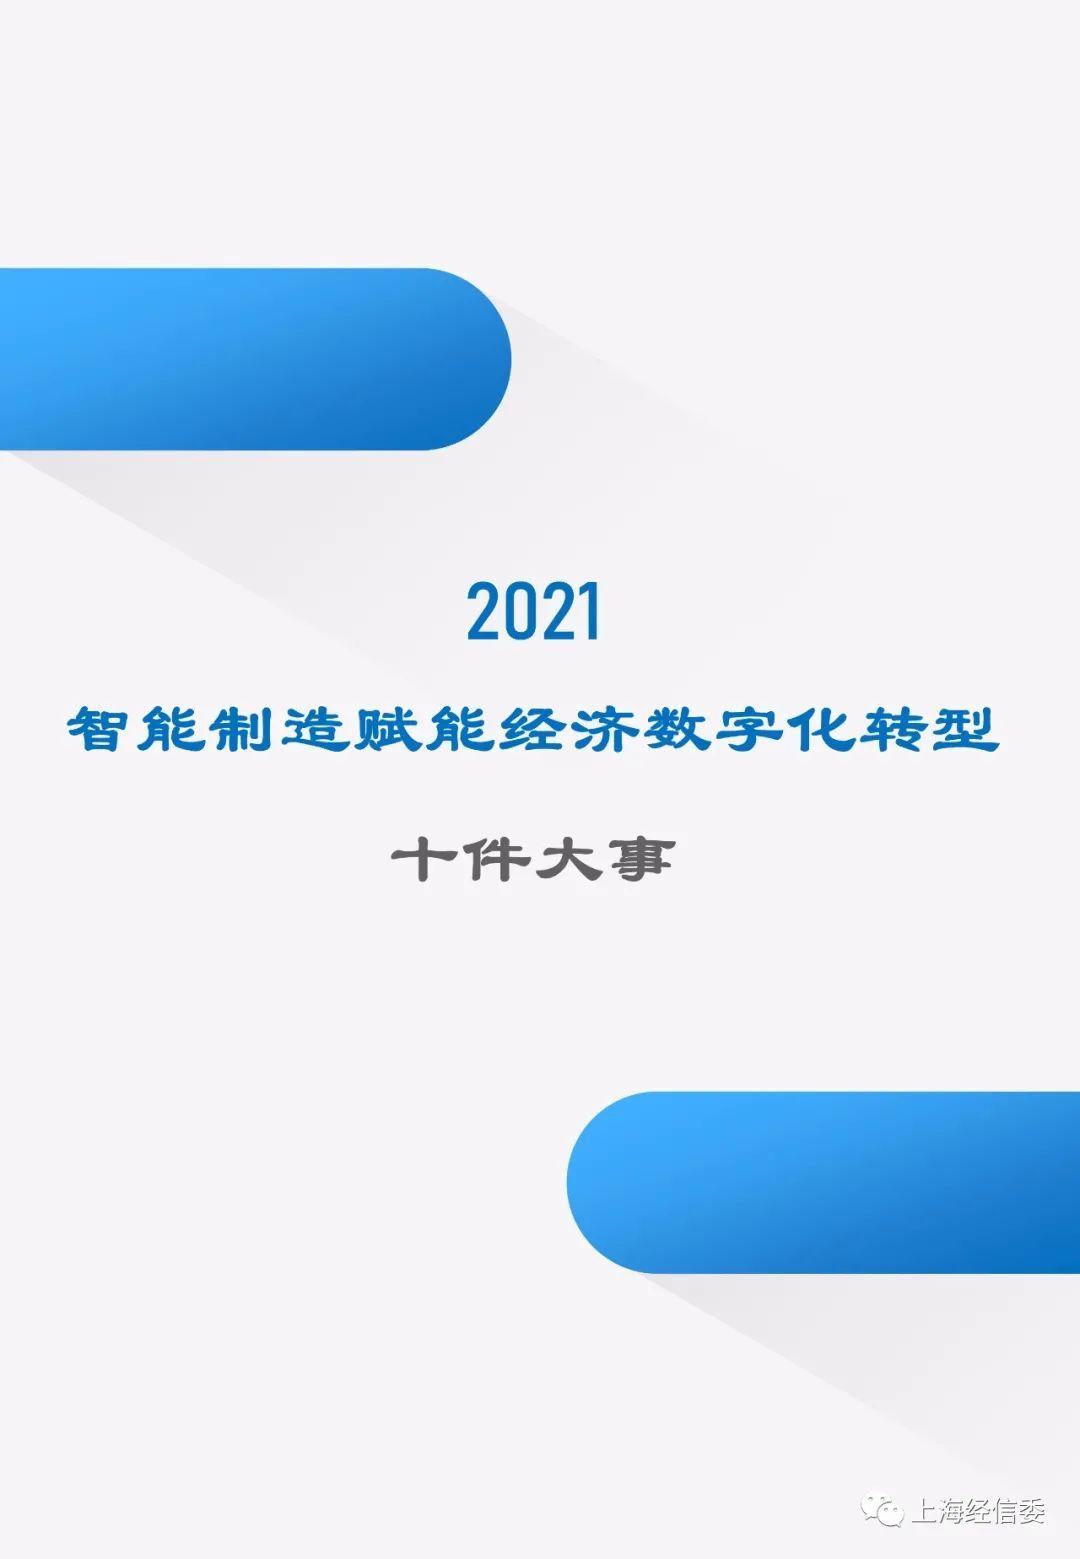 【年度盘点】2021年上海智能制造赋能经济数字化转型十件大事